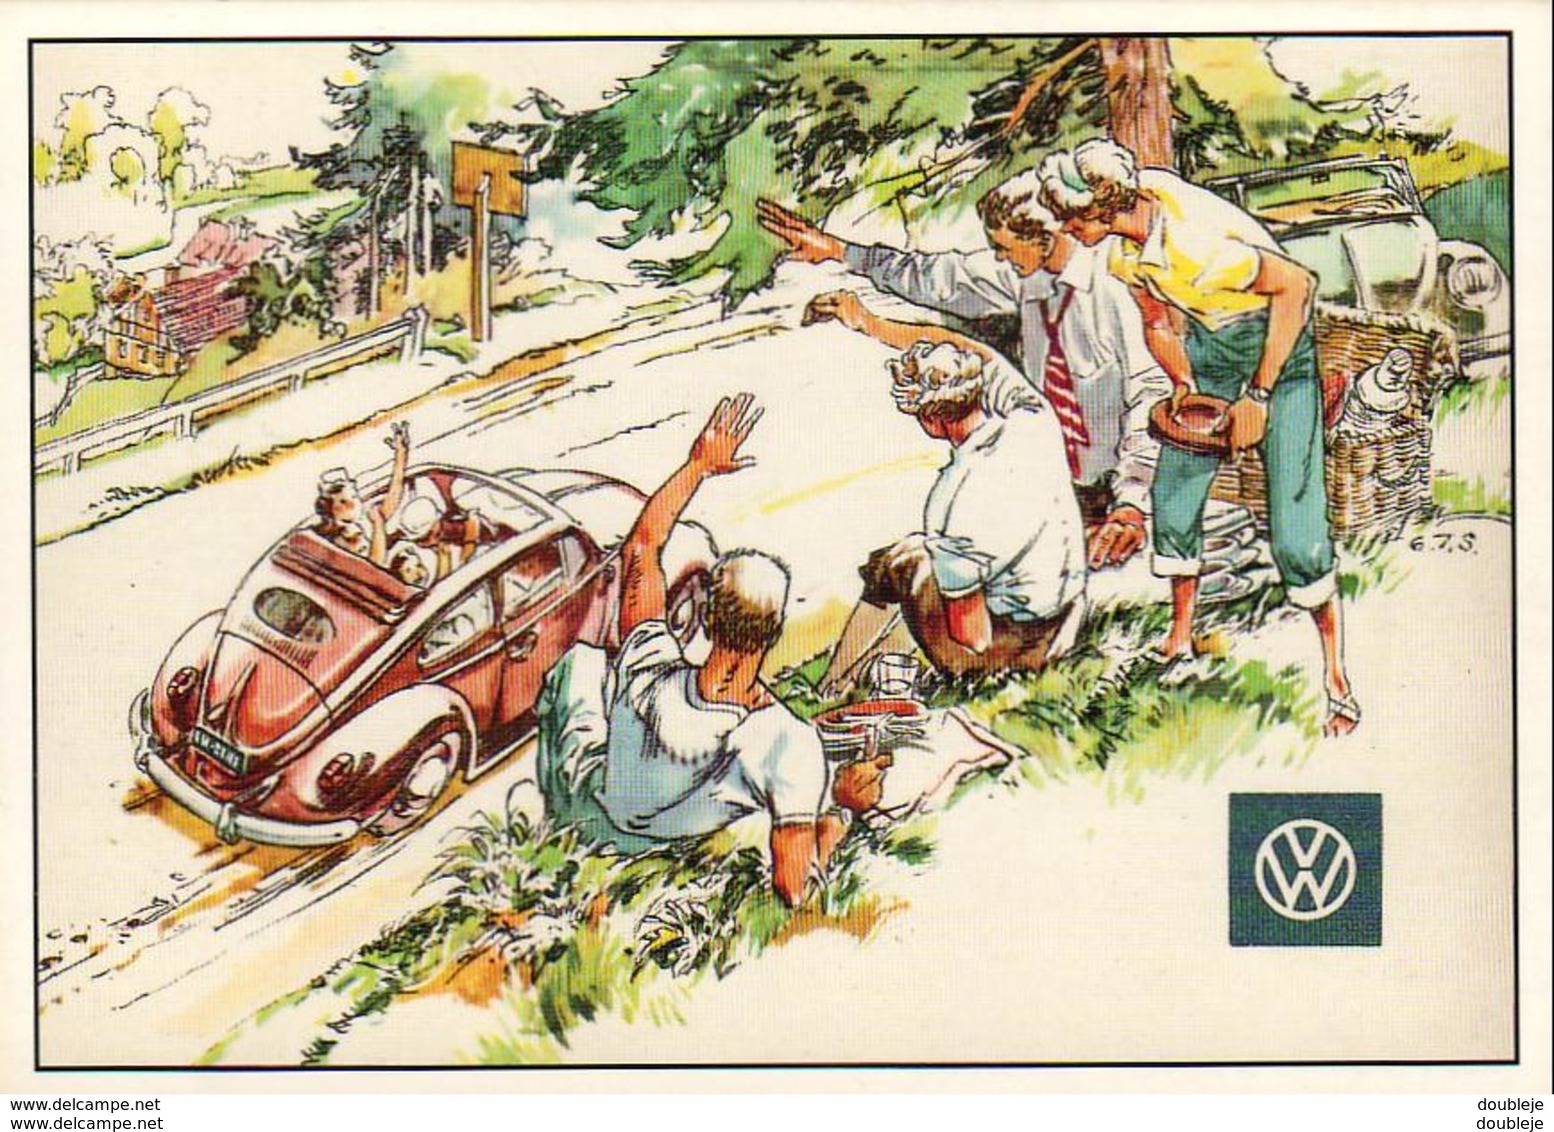 PUBLICITE Volkswagen VW ( Ref P.A.R.C Nr C466 ) - Publicité